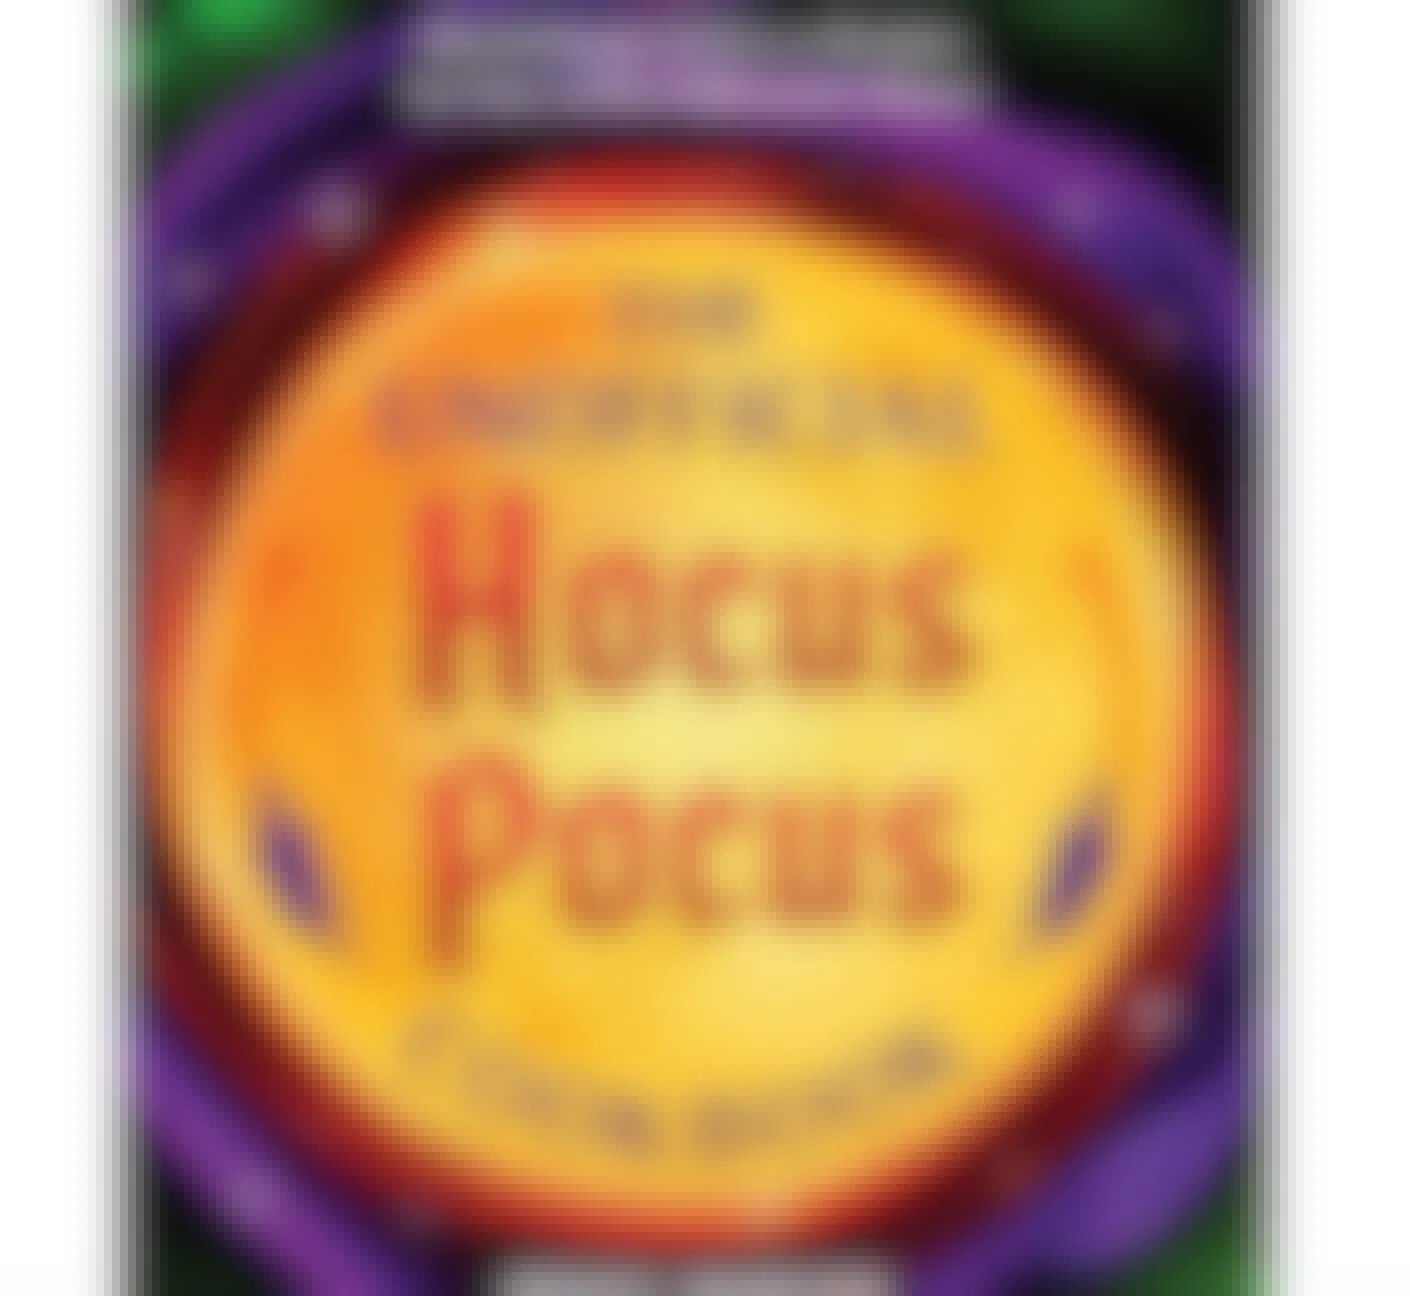 The Unofficial Hocus Pocus Cookbook